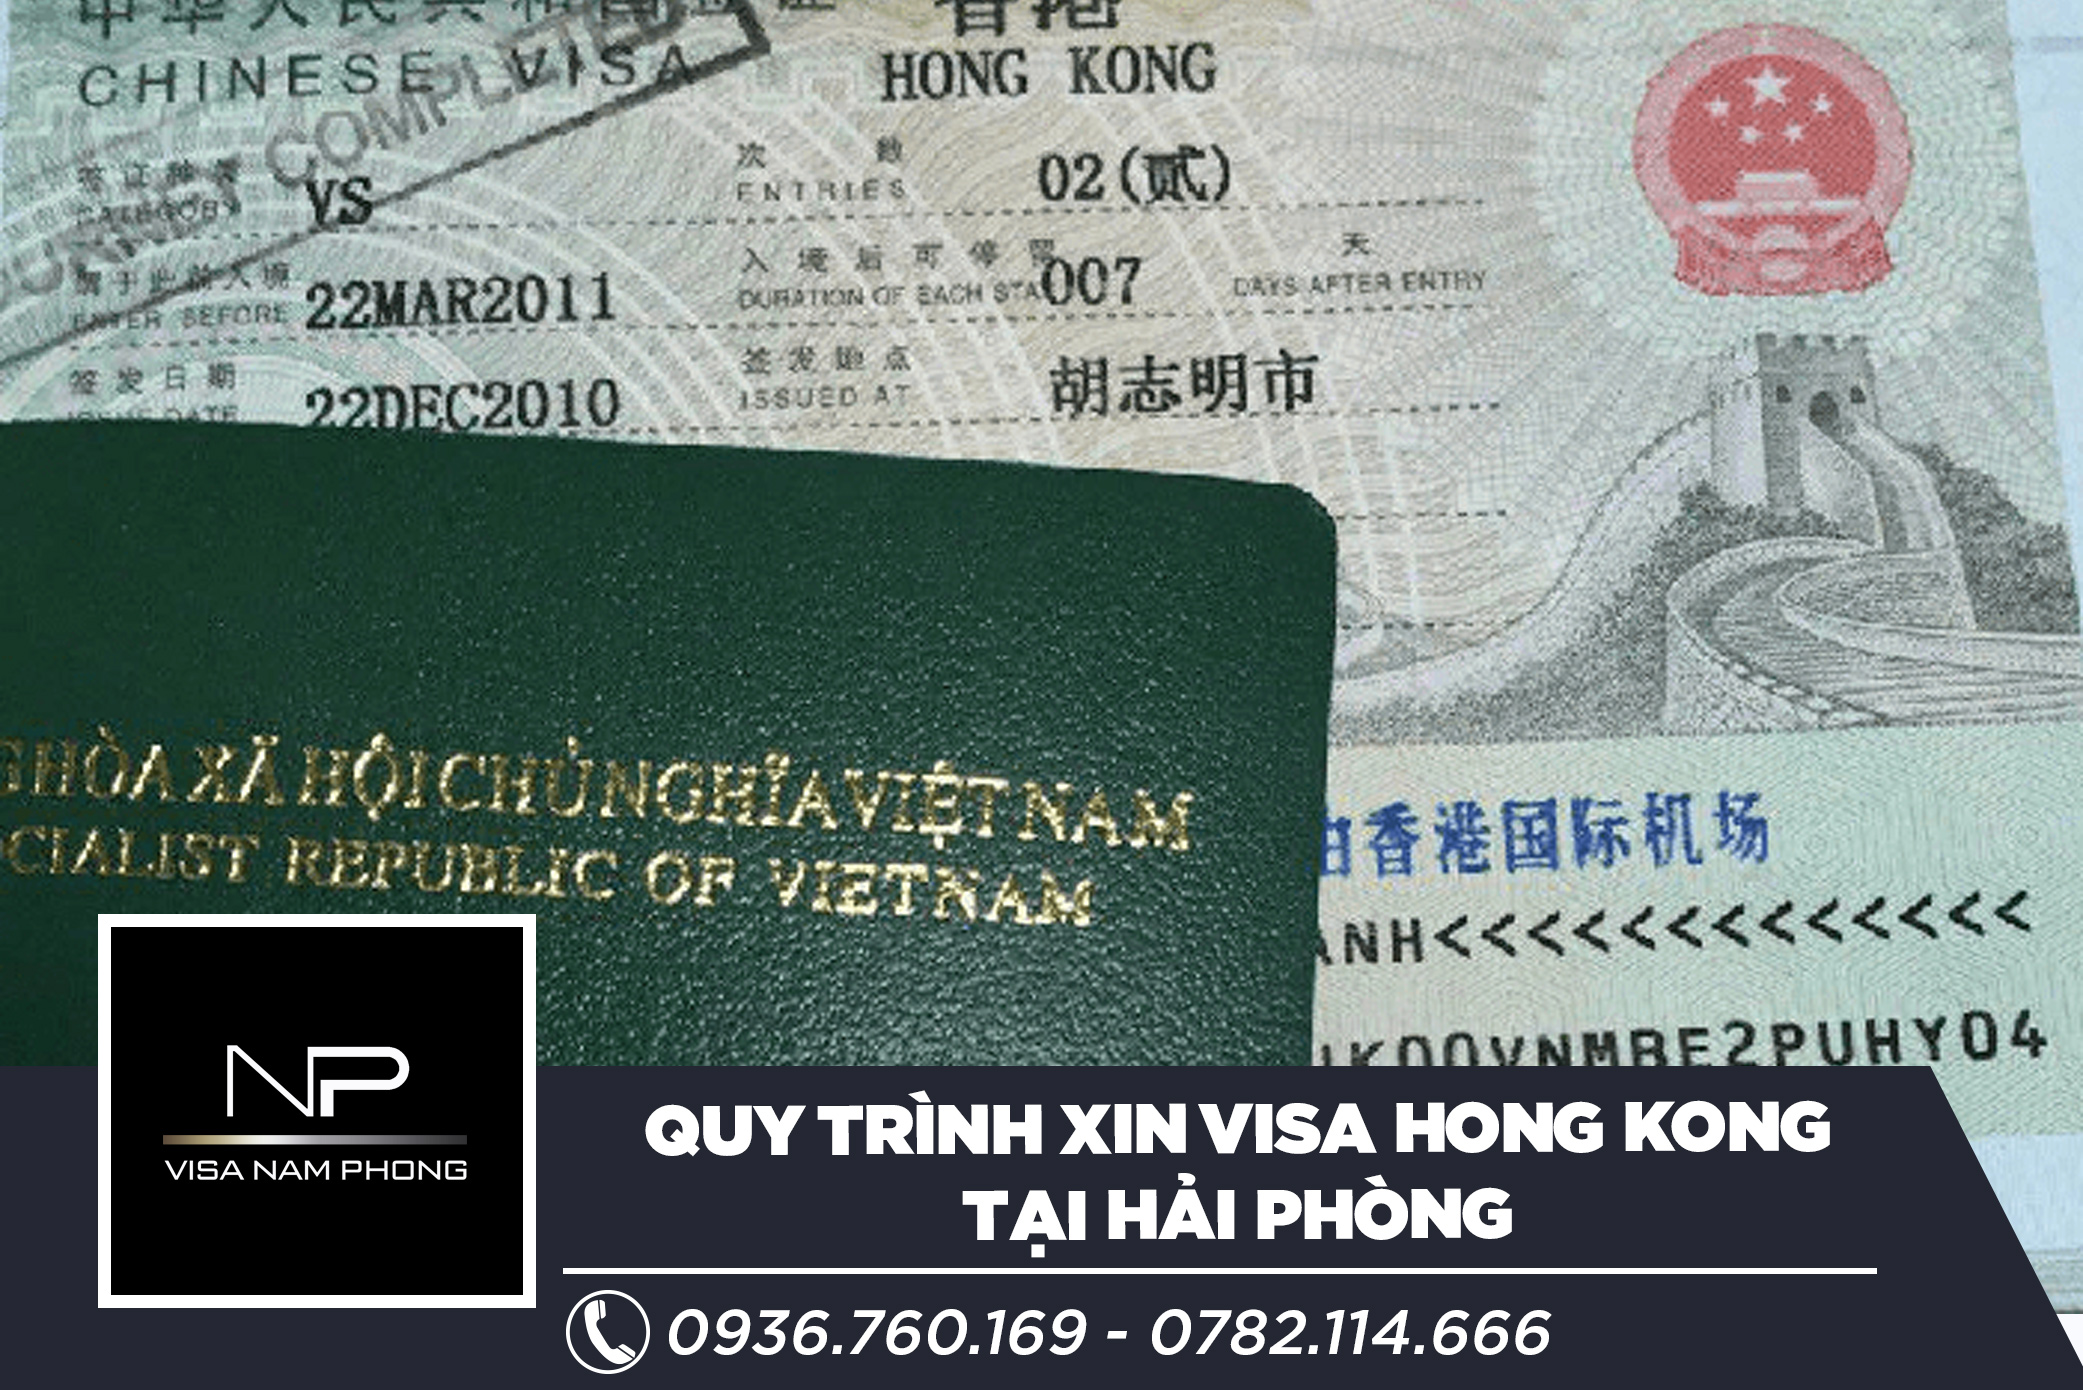 Quy trình xin visa Hong Kong tại Hải Phòng